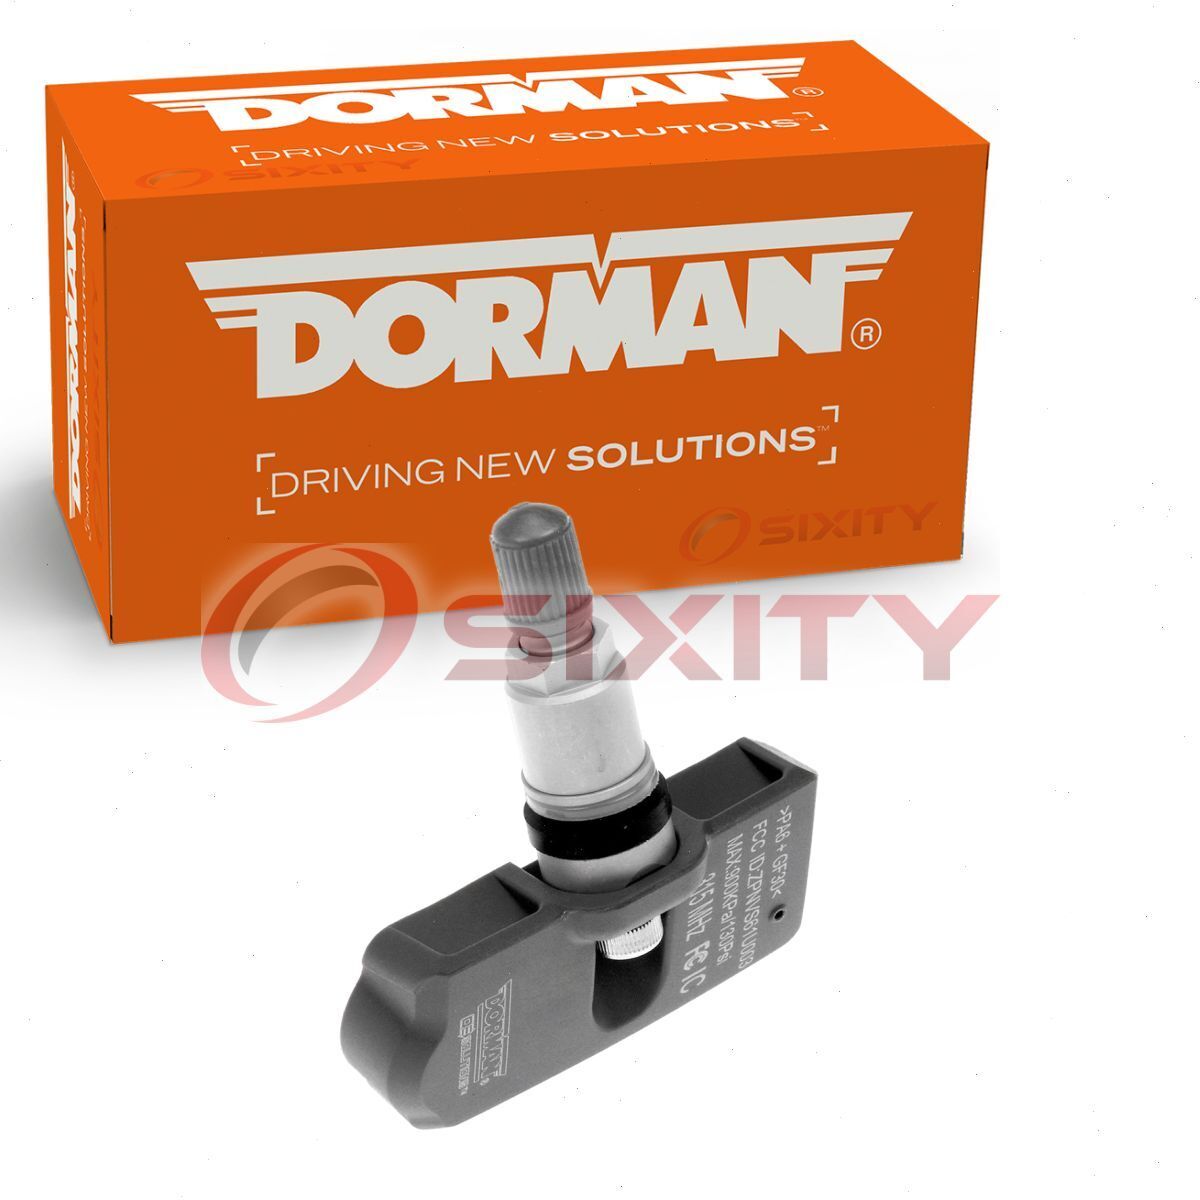 Dorman TPMS Programmable Sensor for 2005-2008 Suzuki Reno Tire Pressure ps